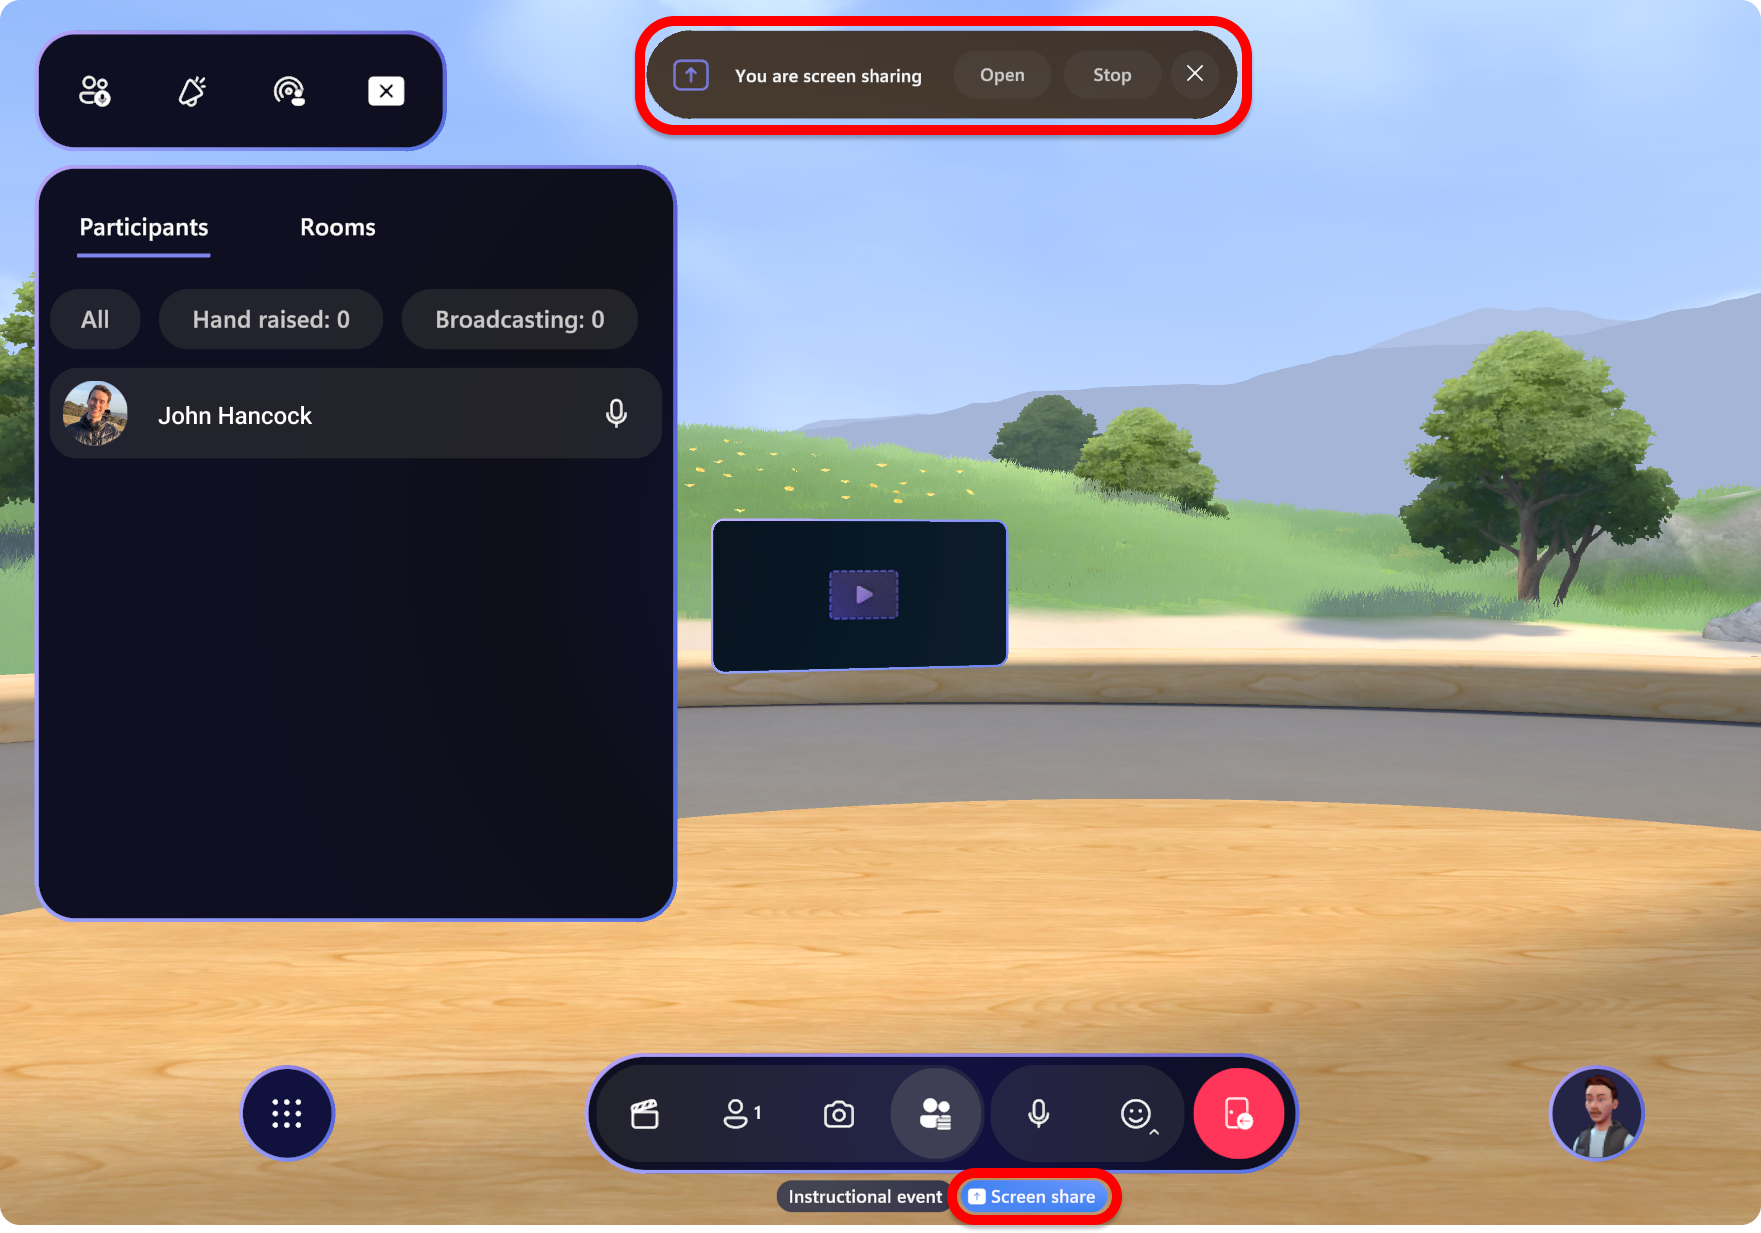 Captura de pantalla de la aplicación Mesh que muestra alertas para el recurso compartido de pantalla.